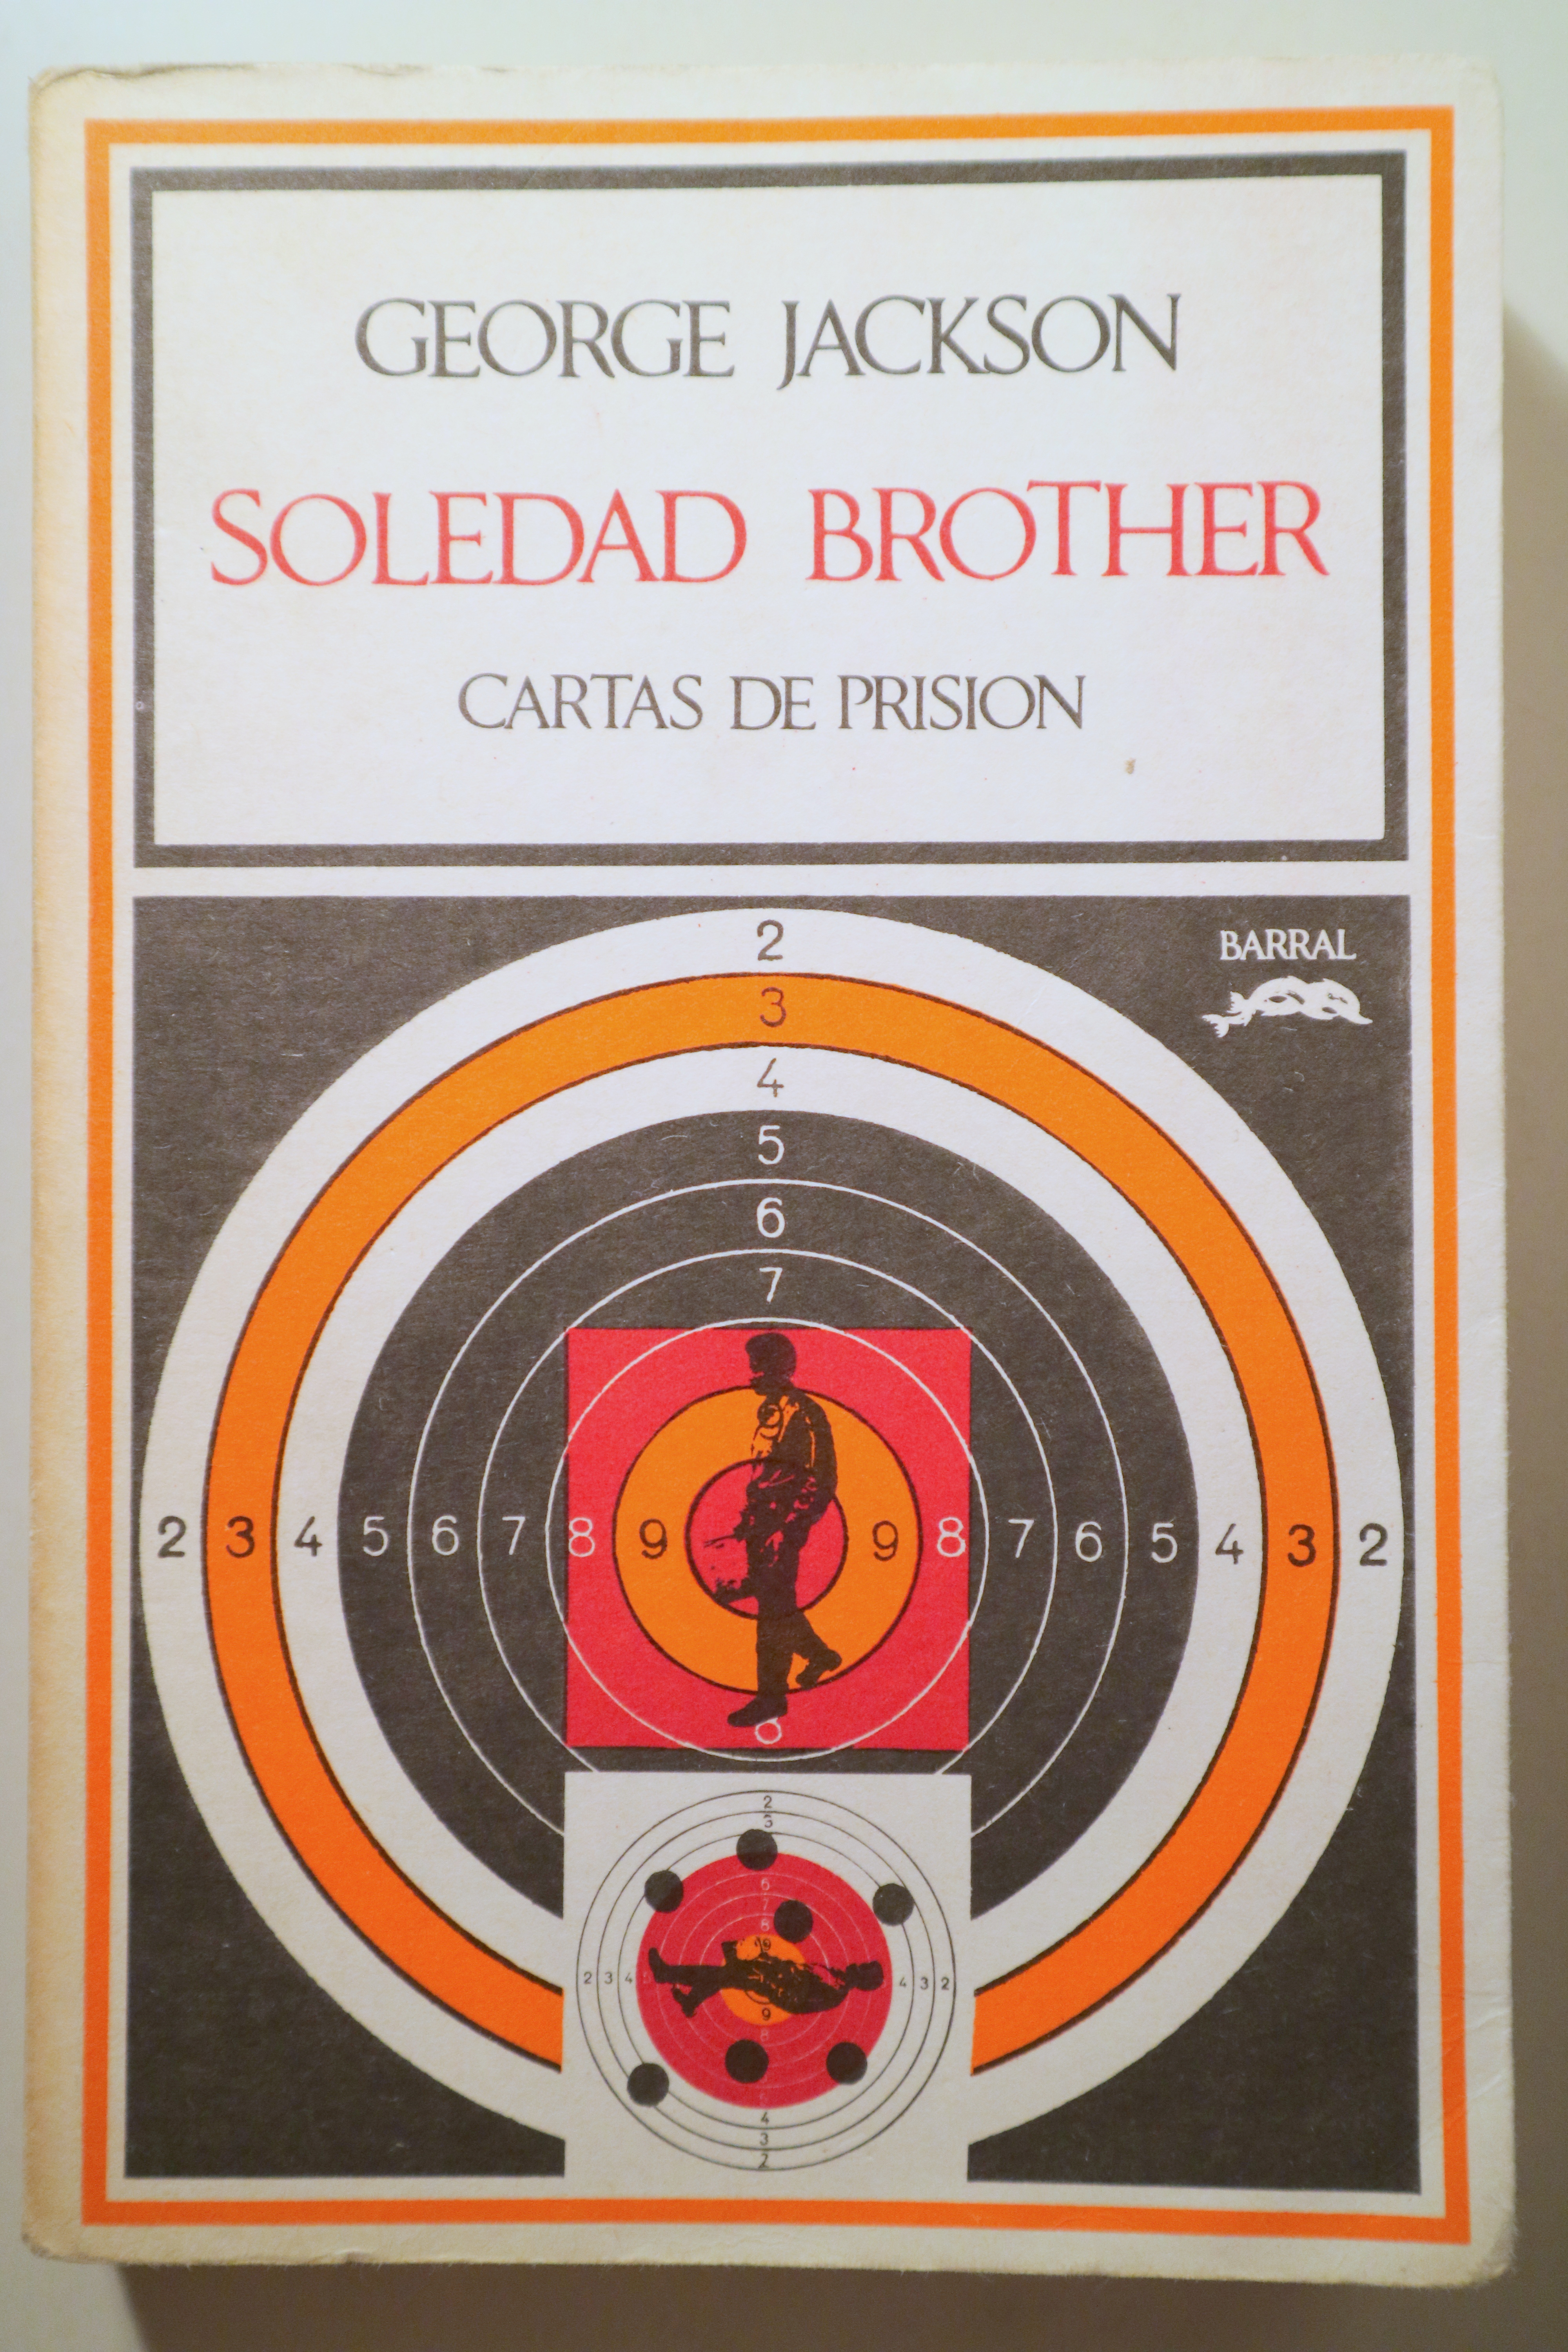 SOLEDAD BROTHER. Cartas de prision - Barcelona 1972